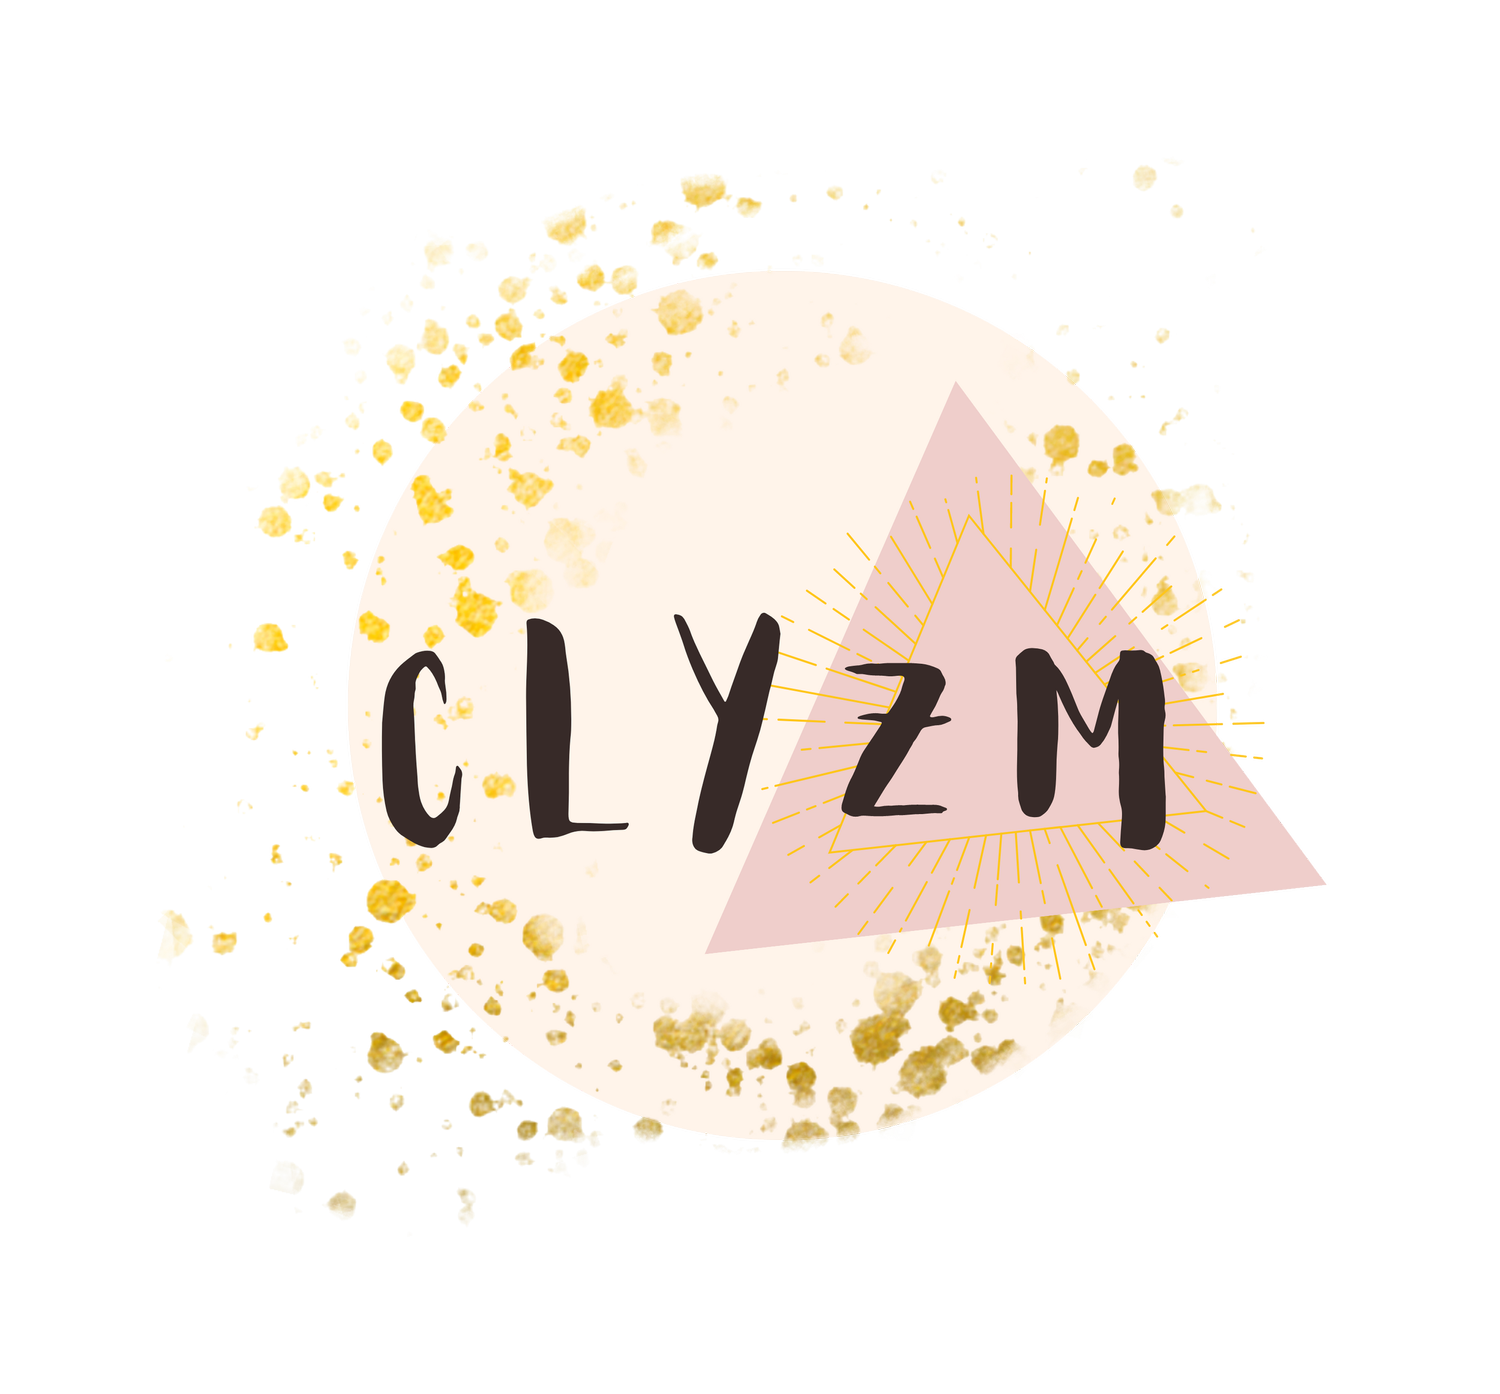 CLYZM WINES